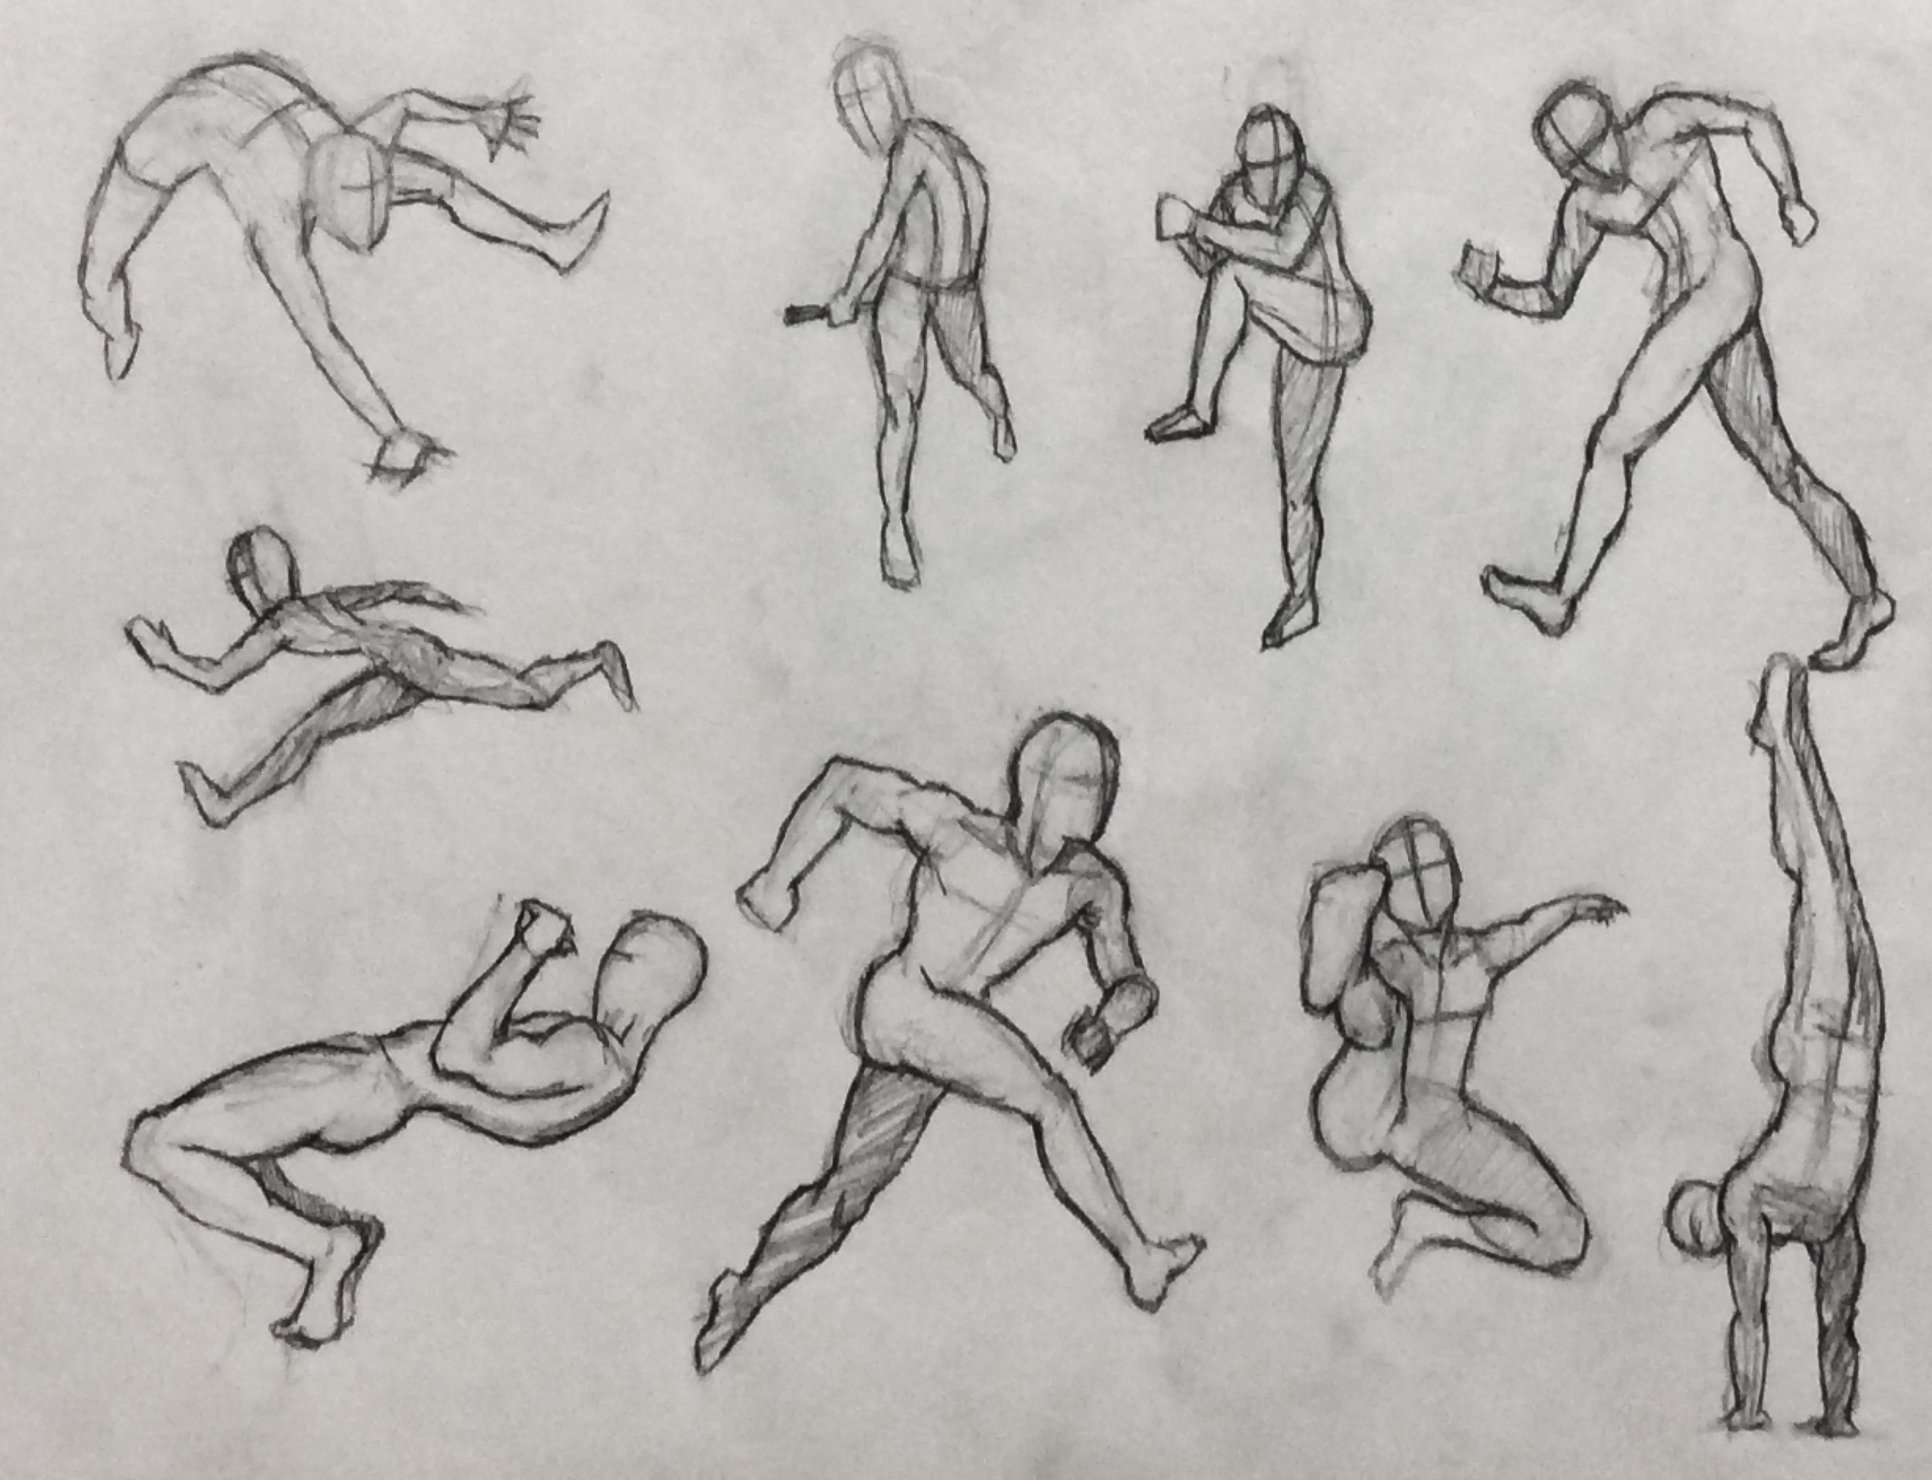 Изобразить человека в движении. Фигура человека в движении. Рисование человека в движении. Рисование фигуры человека в движении. Люди в разных позах для набросков.